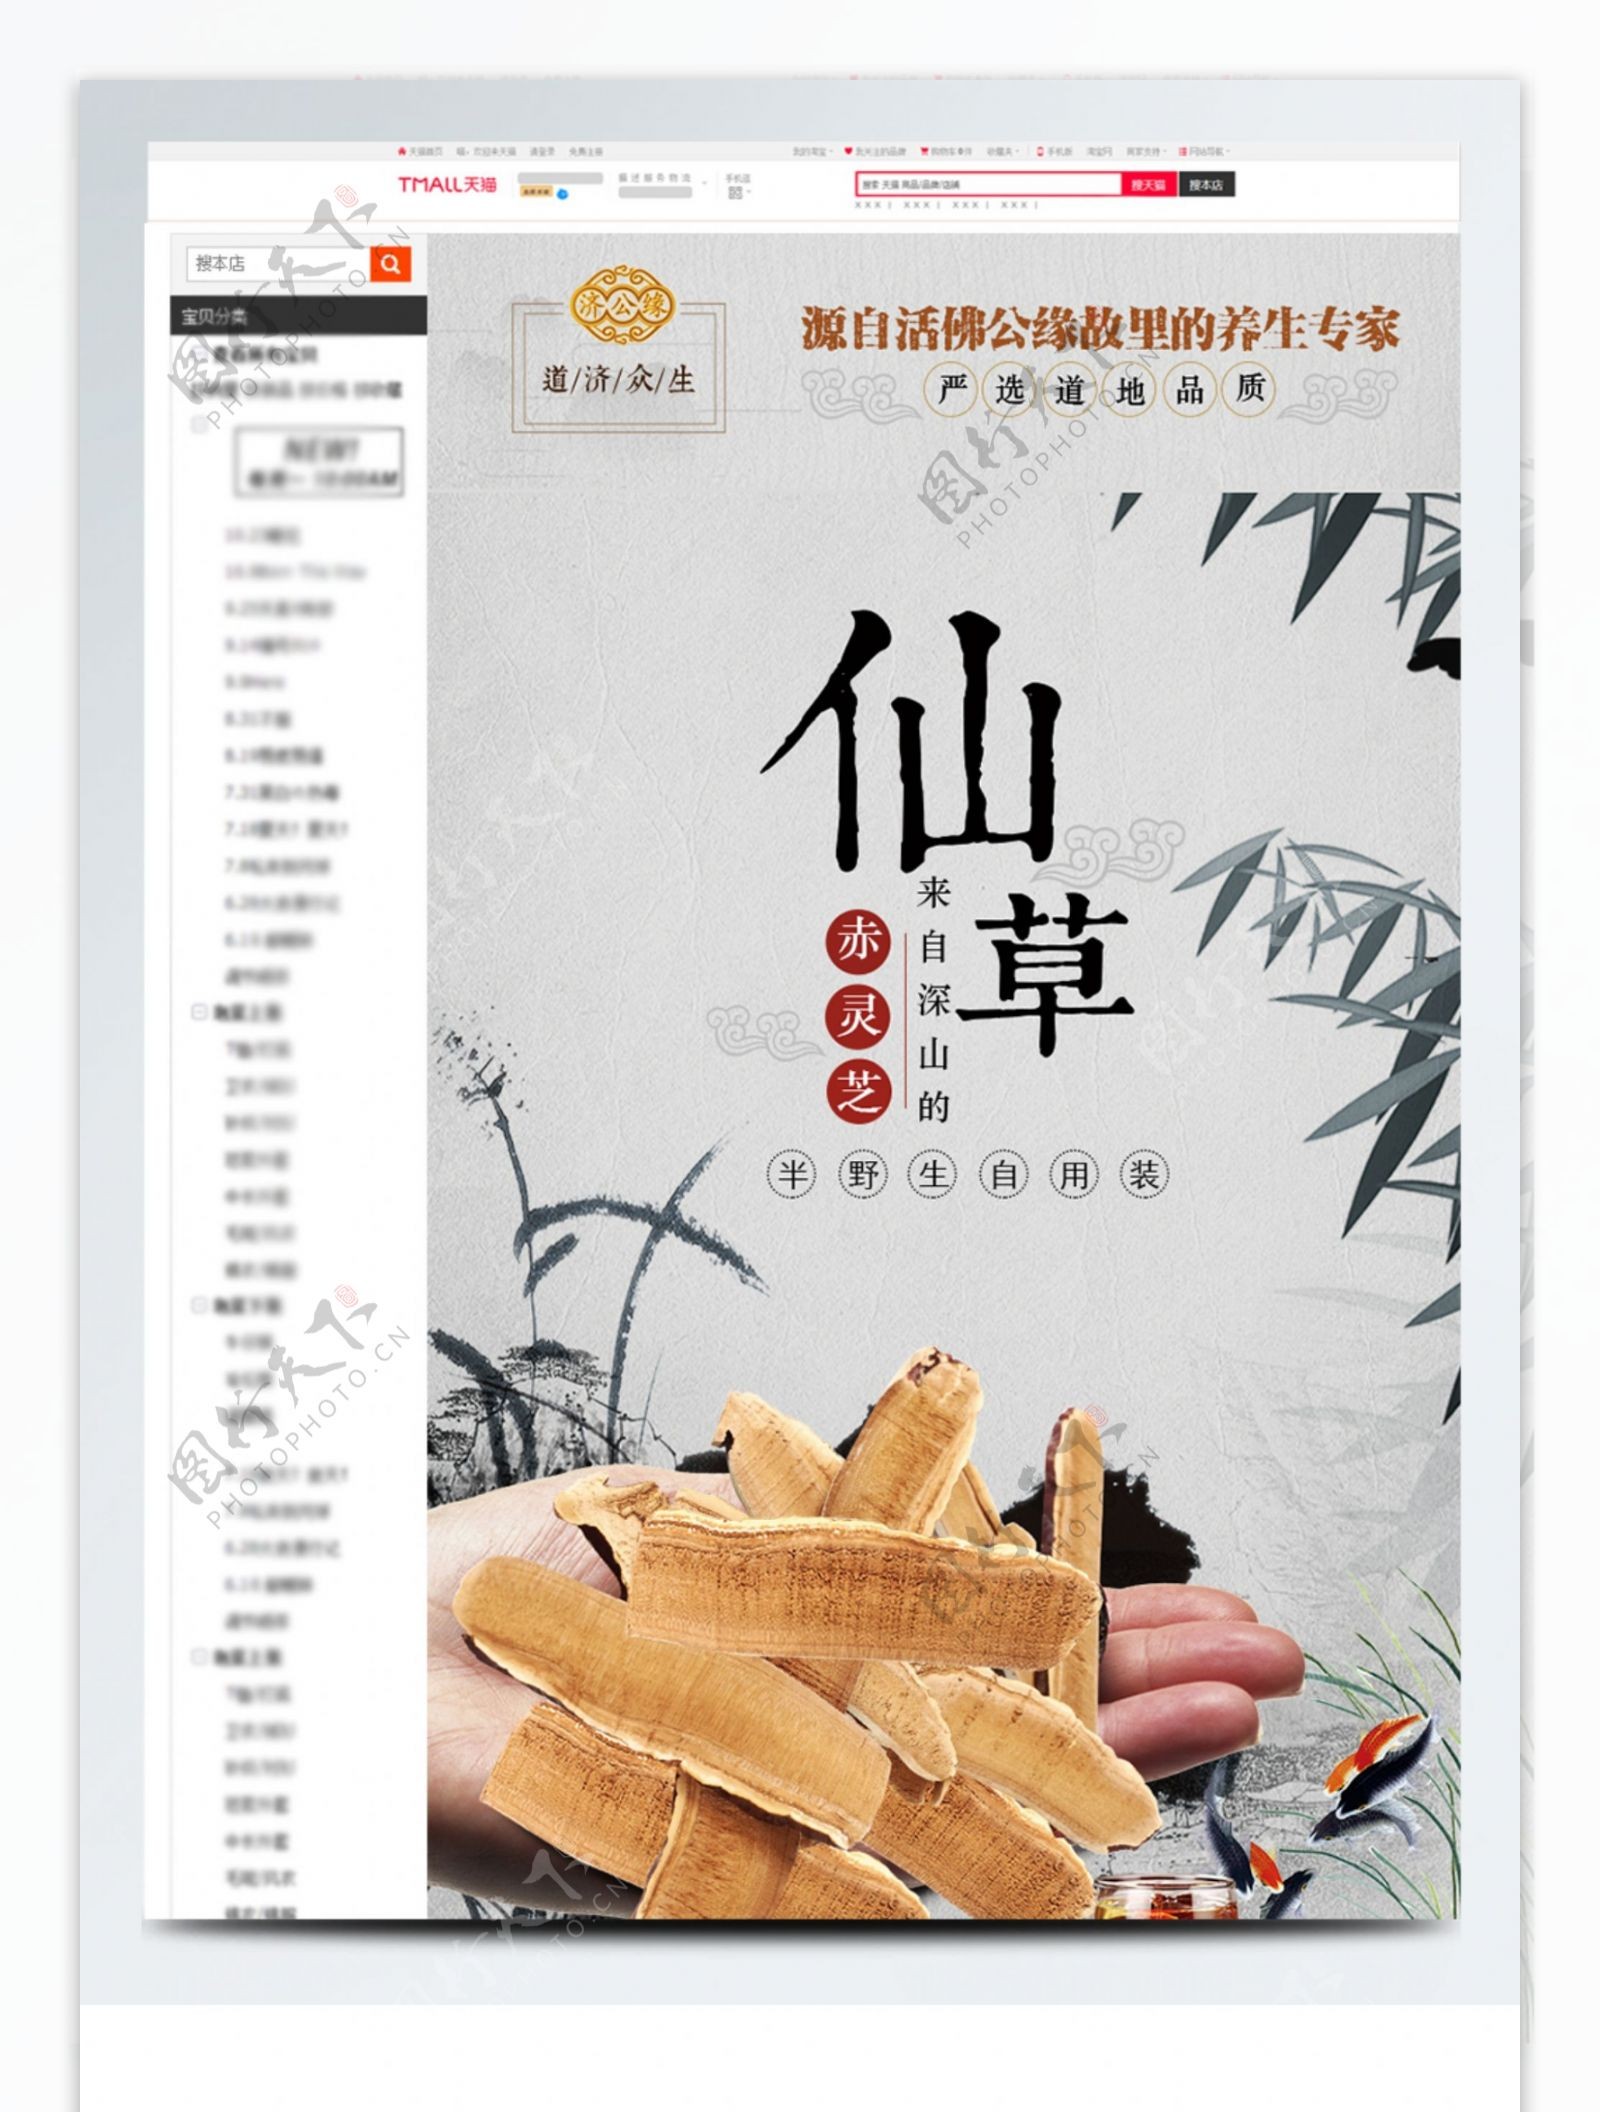 电商淘宝天猫食品茶饮灵芝790详情页模版